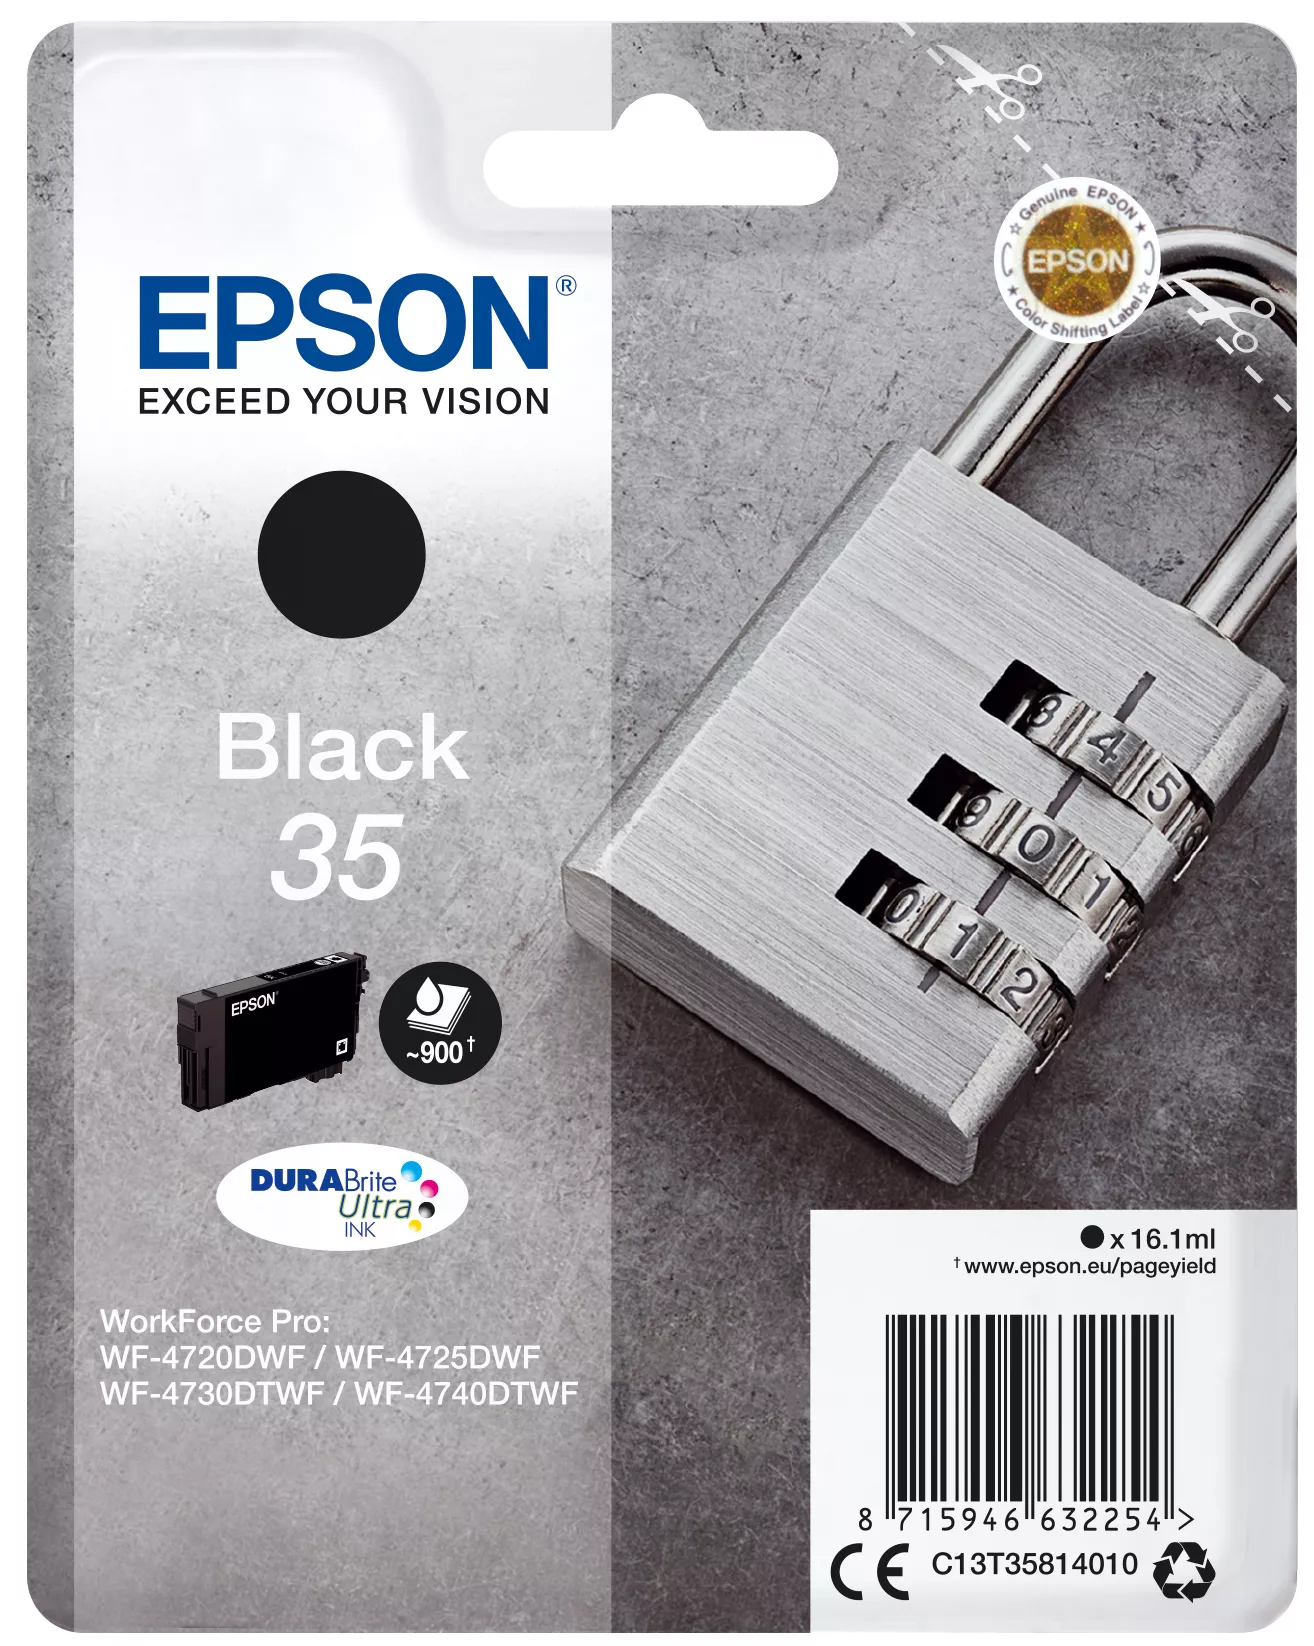 Achat EPSON 35 Ink Black 16.1ml Blister - 8715946632261